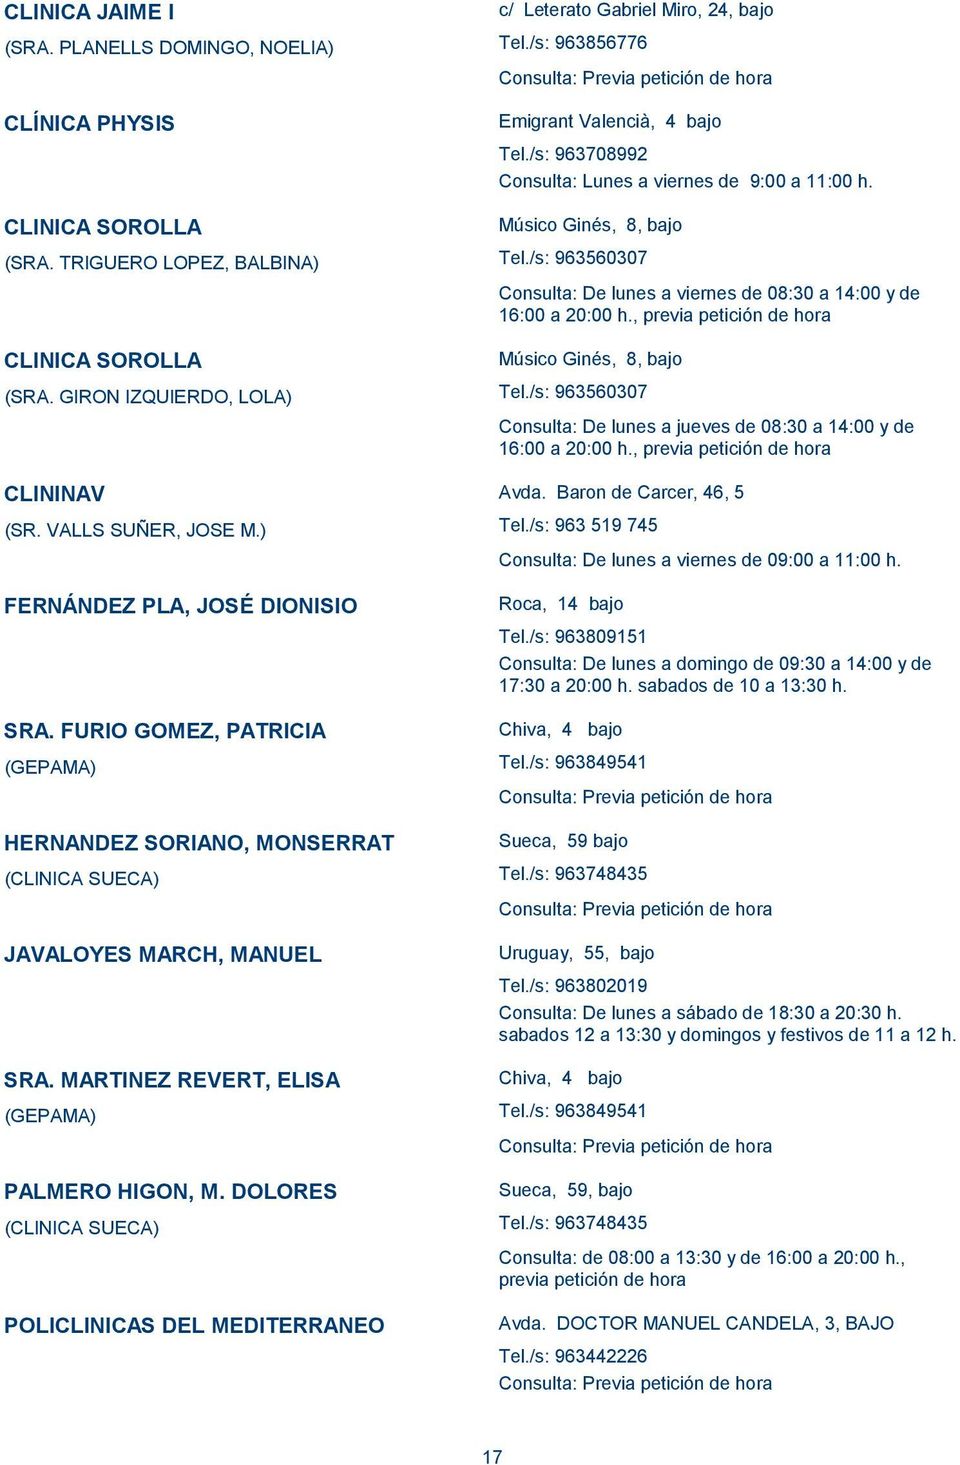 DOLORES (CLINICA SUECA) POLICLINICAS DEL MEDITERRANEO c/ Leterato Gabriel Miro, 24, bajo Tel./s: 963856776 Emigrant Valencià, 4 bajo Tel./s: 963708992 Consulta: Lunes a viernes de 9:00 a 11:00 h.